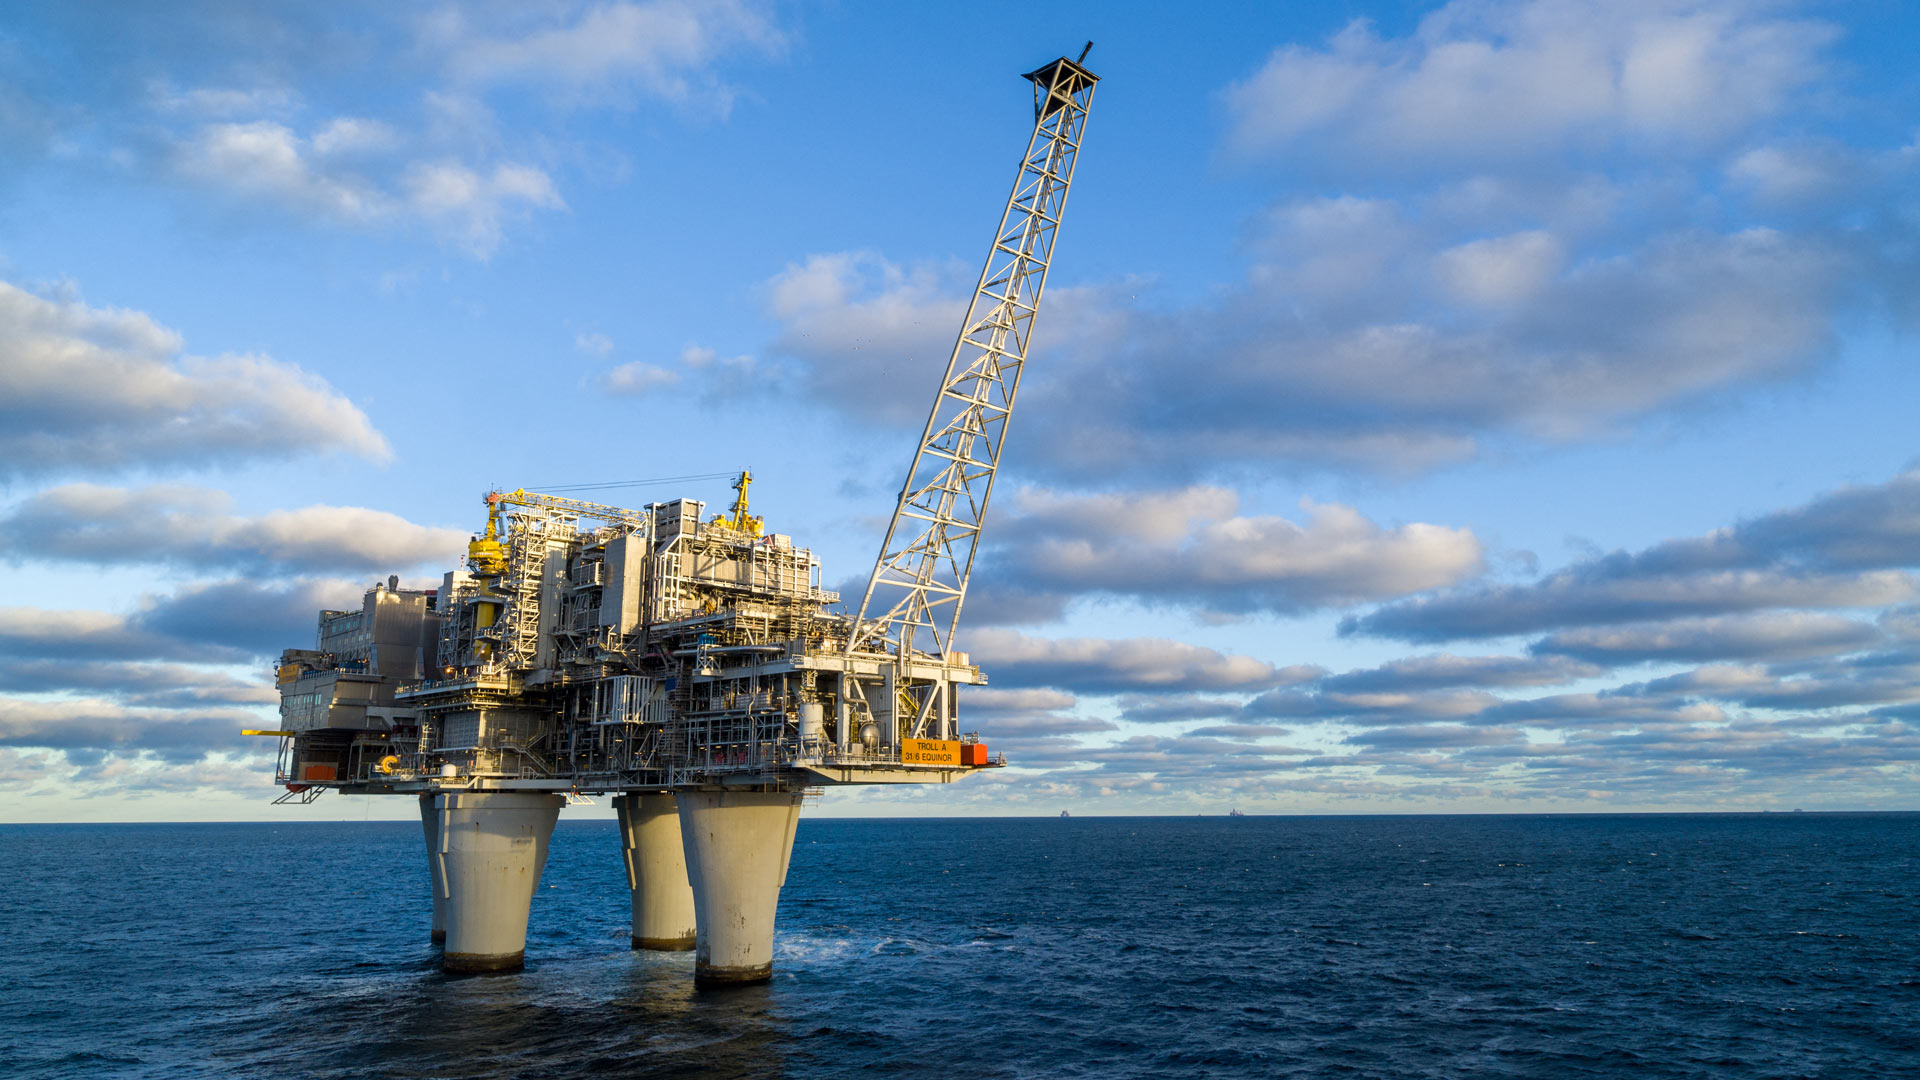 Offshore-Erdgasplattform in der Nordsee | picture alliance / abaca